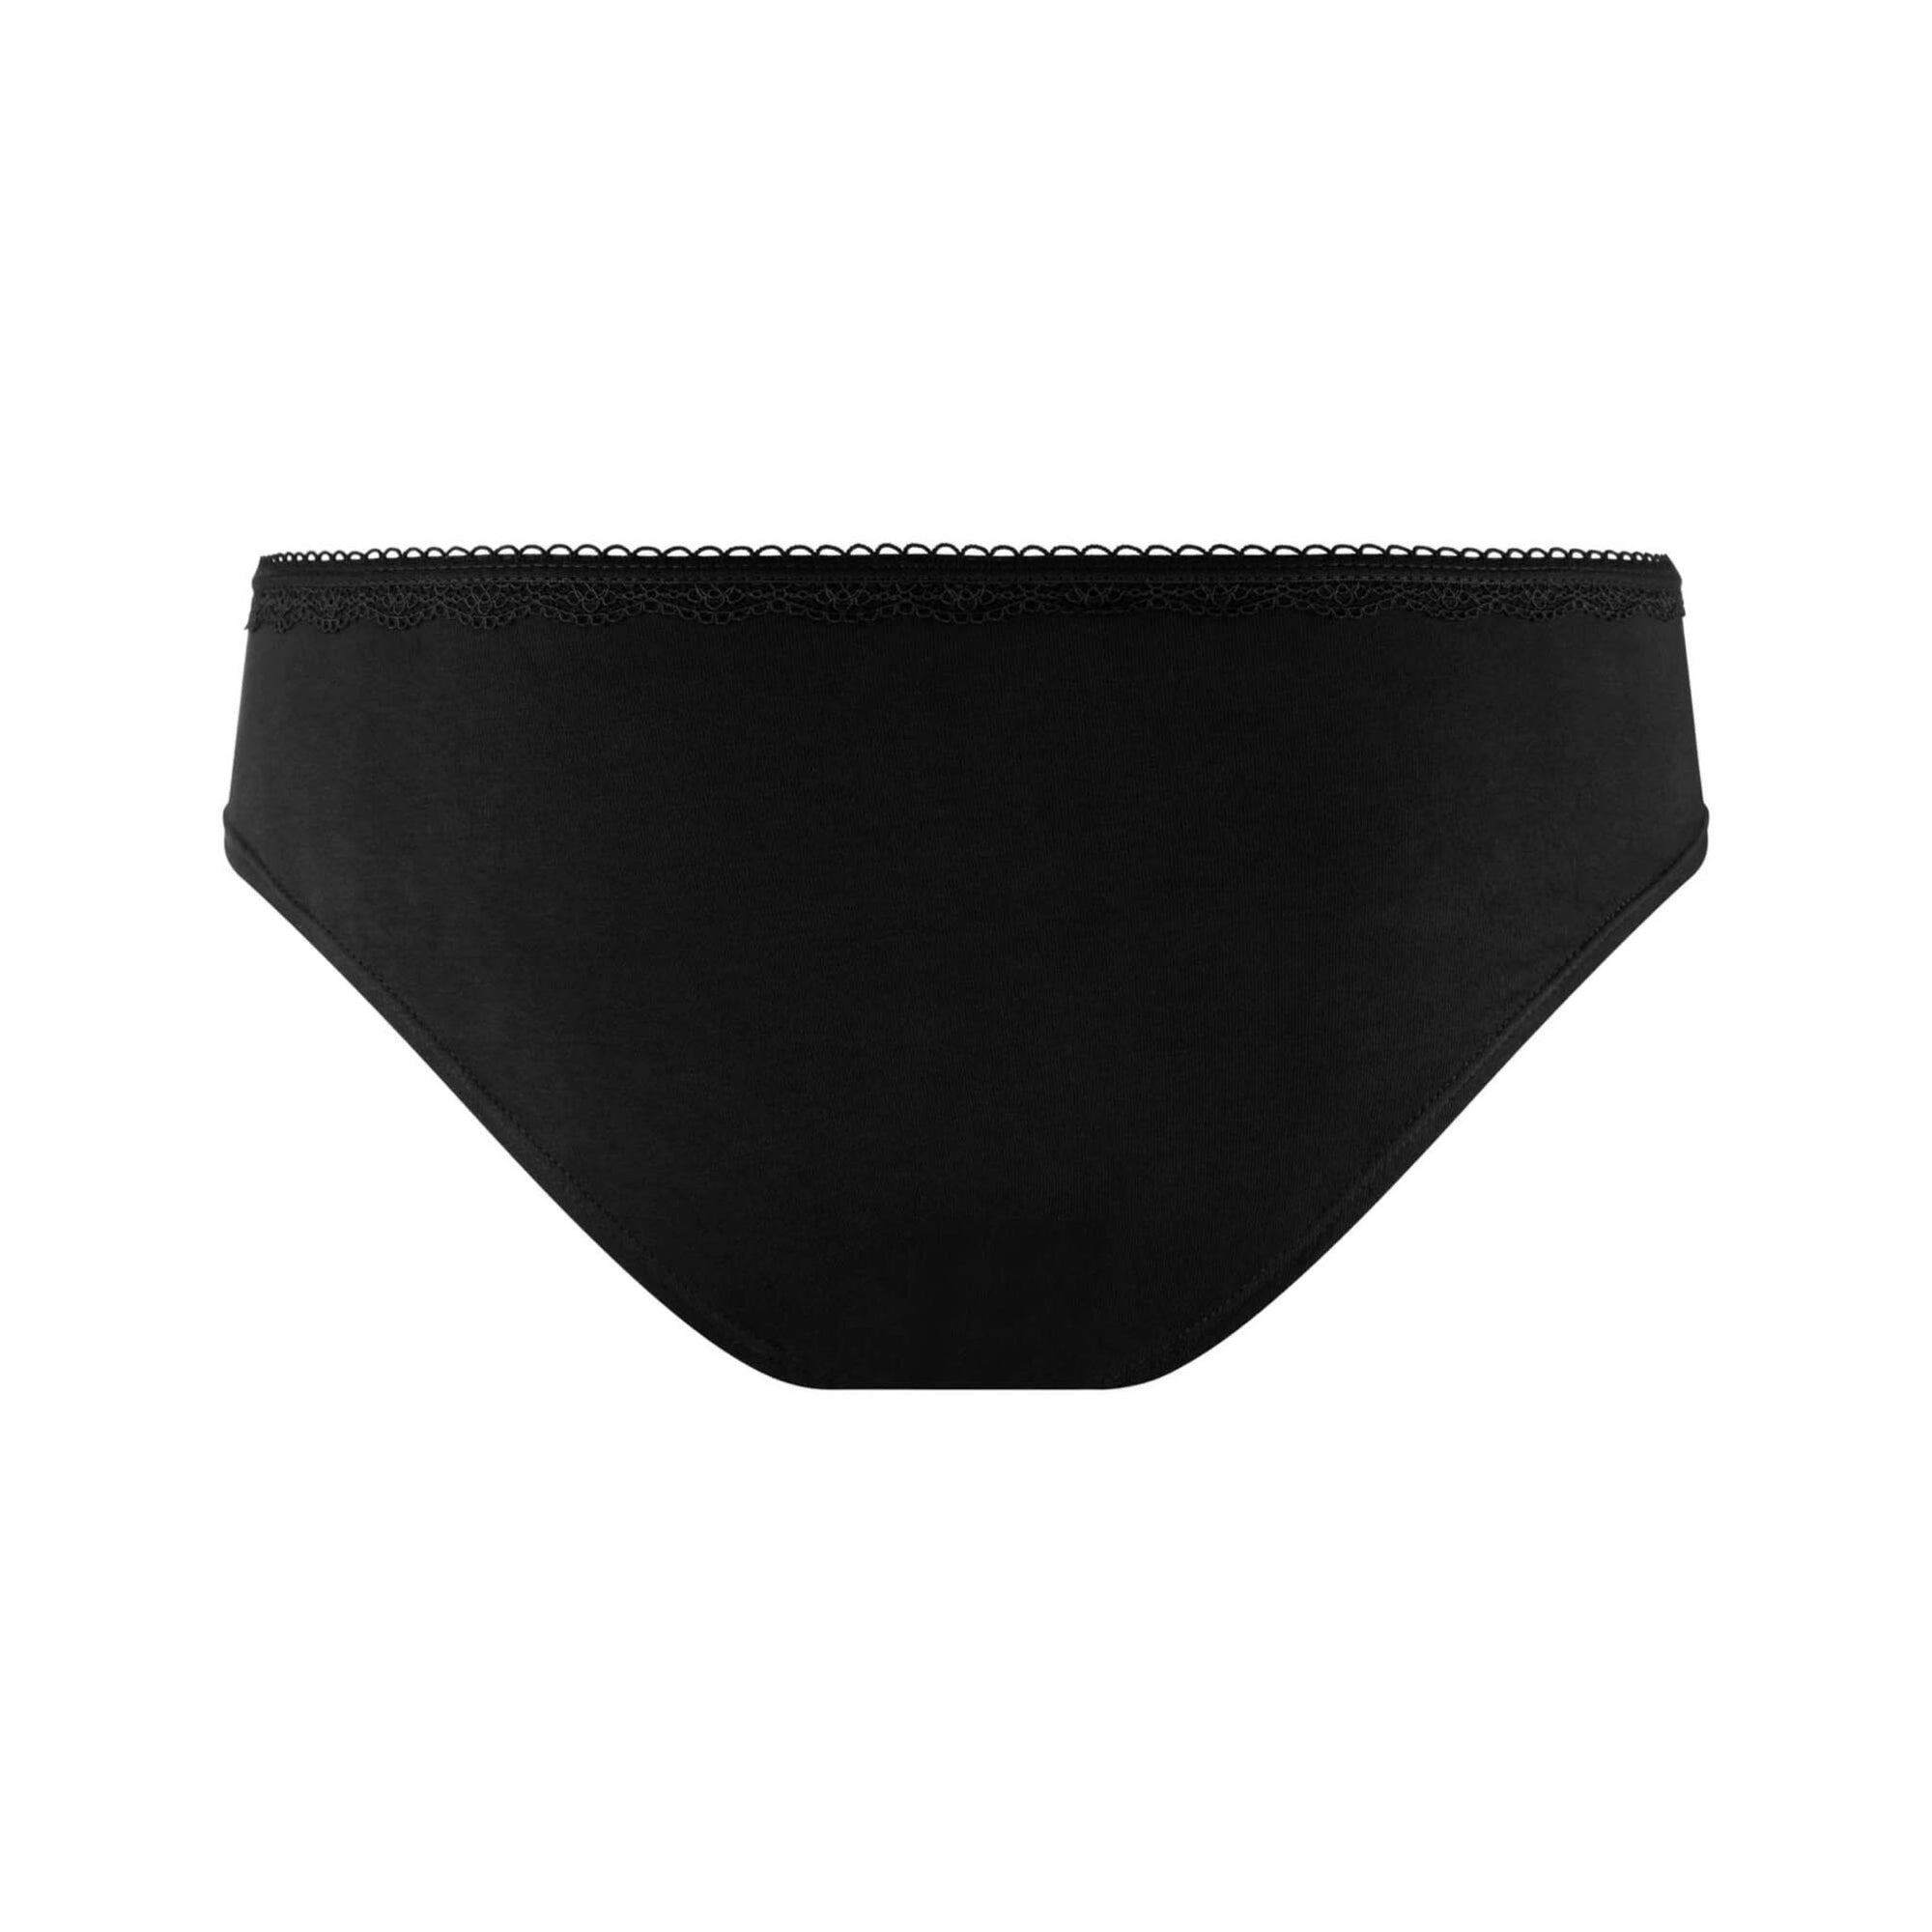 Standard Clip & Hook Underwear Underwear - The Shapes United